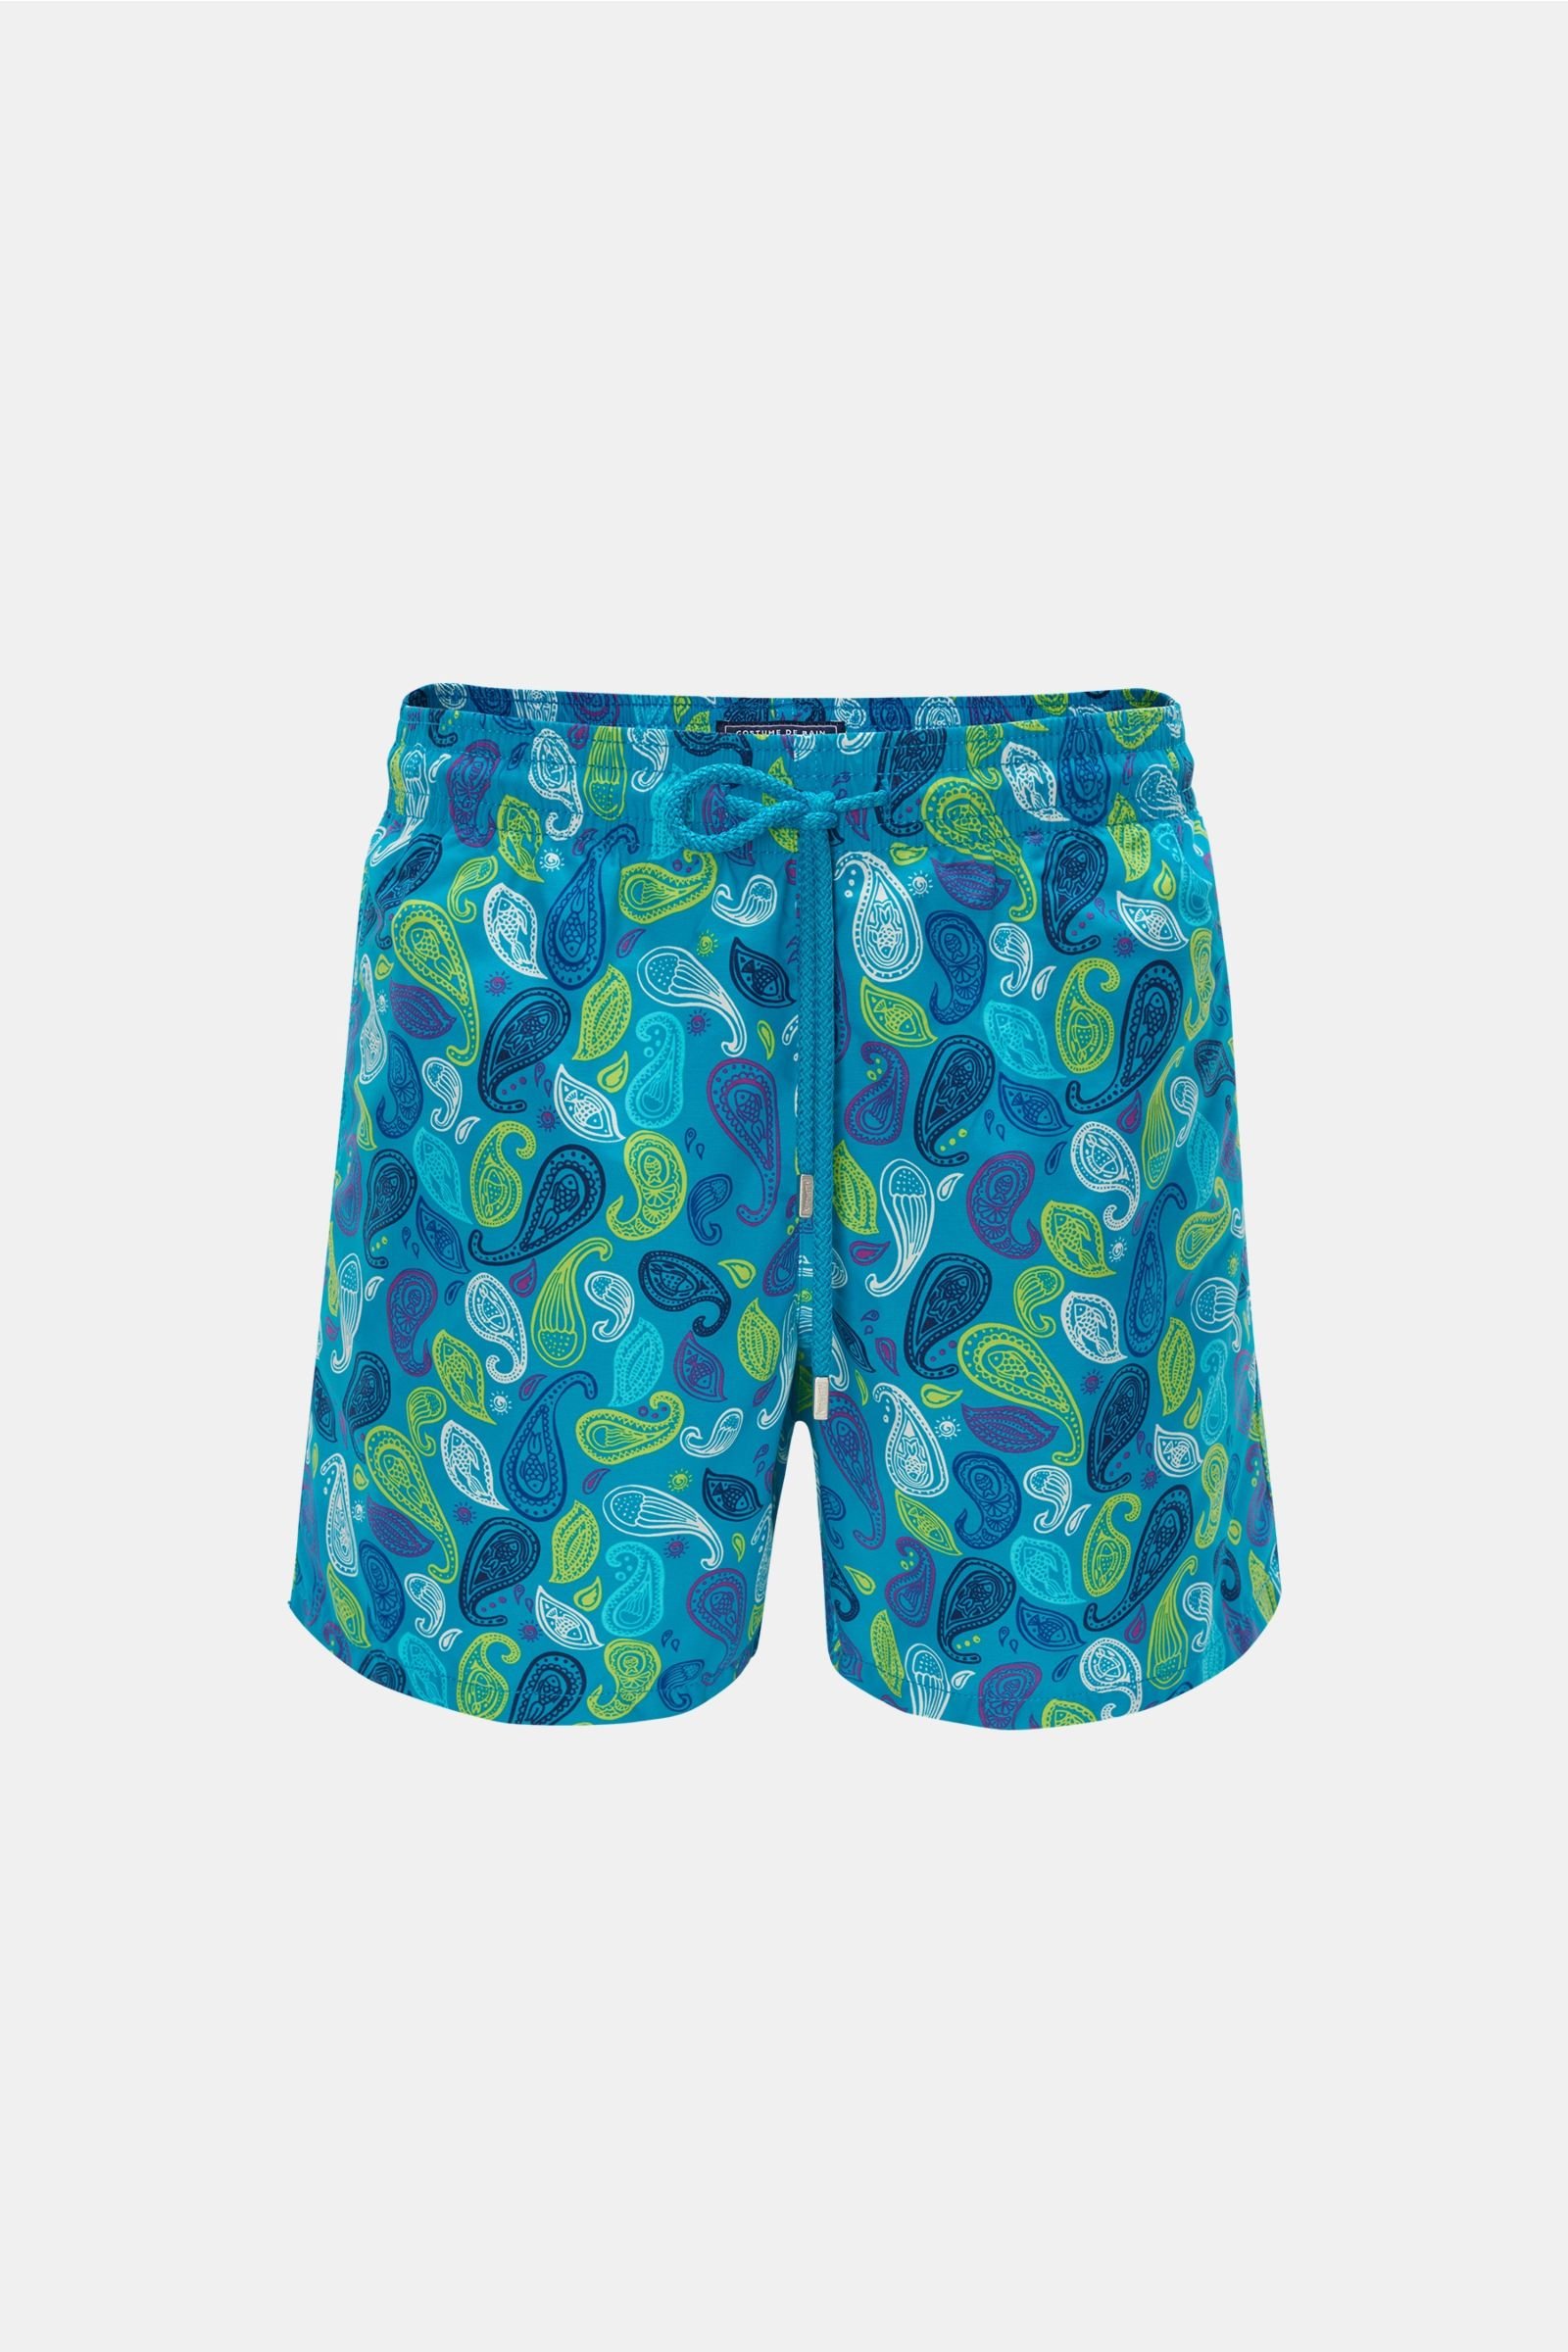 Swim shorts 'Moorea' turquoise patterned